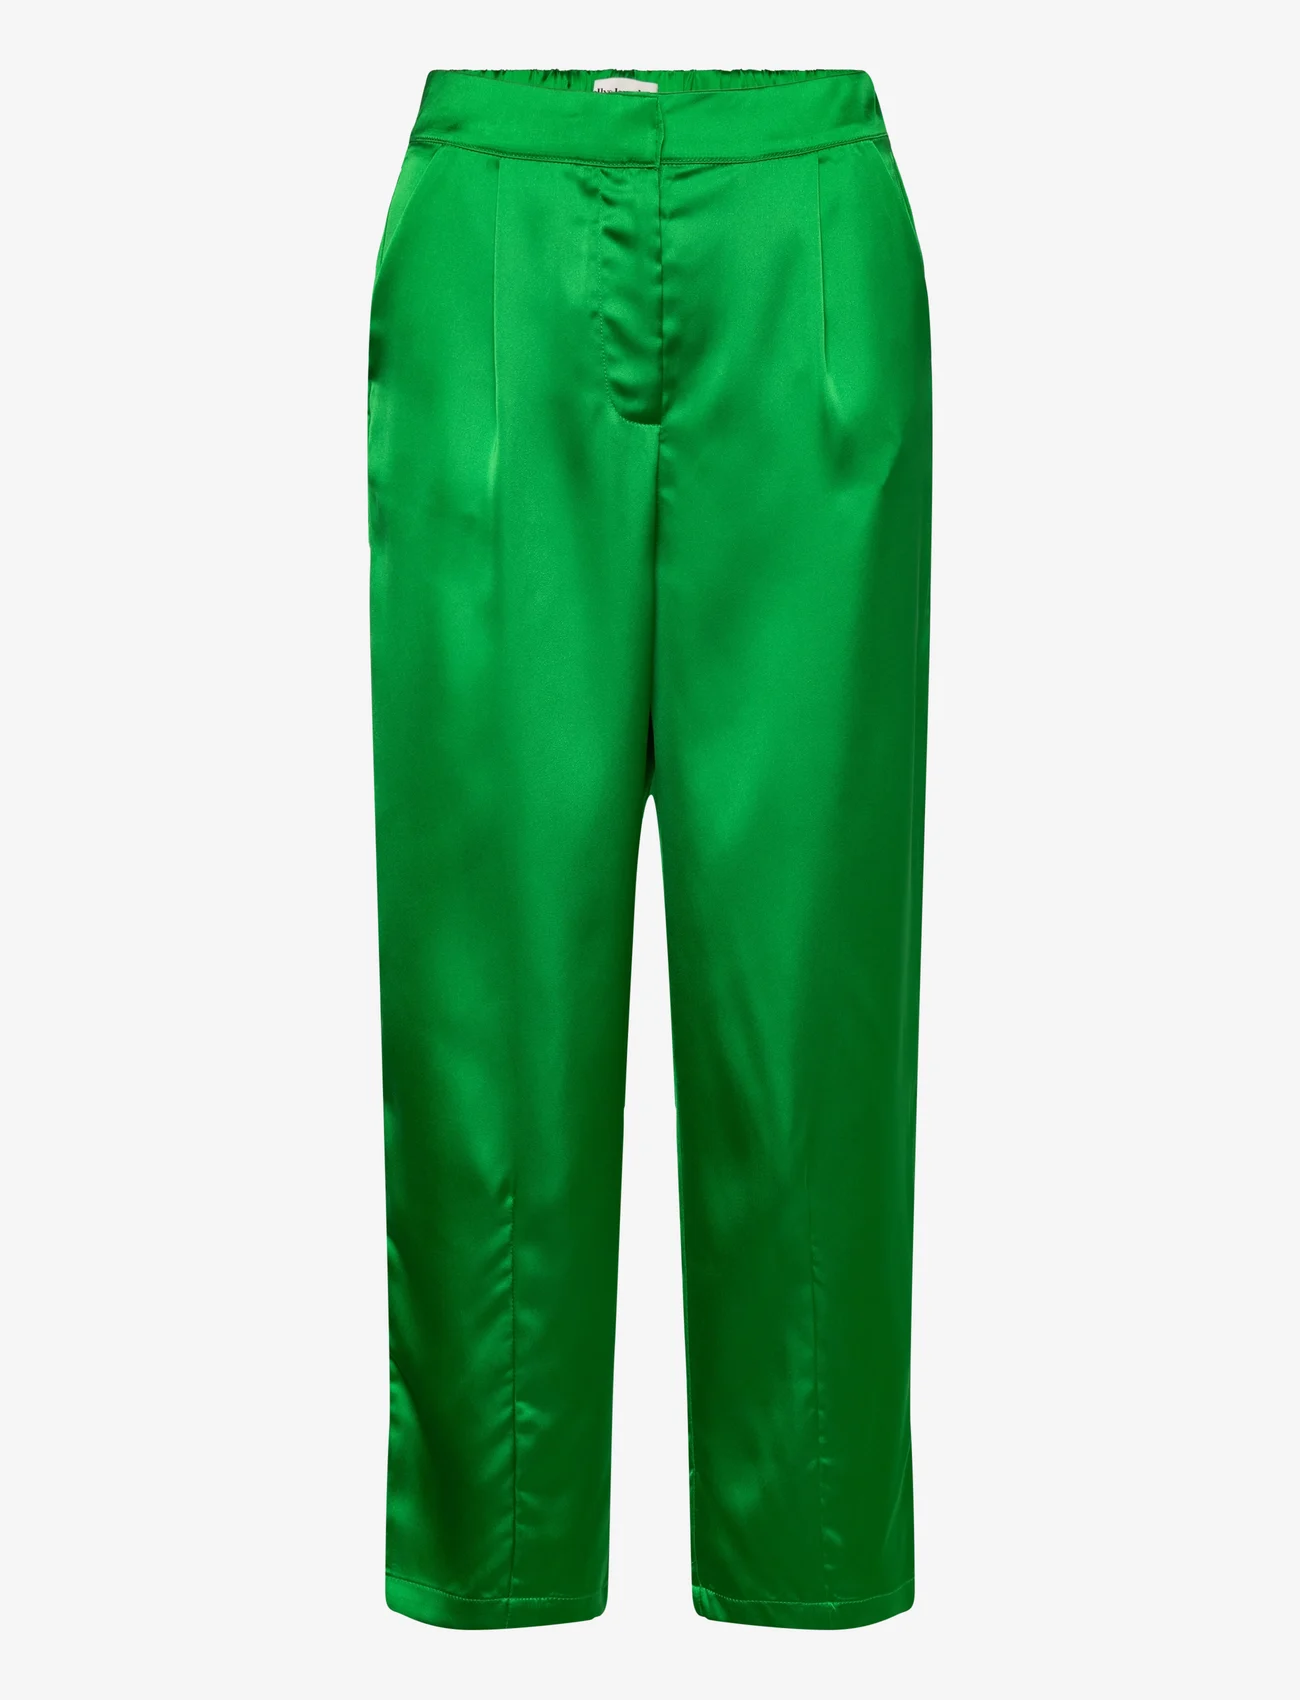 Lollys Laundry - Maisie Pants - sirge säärega püksid - green - 0